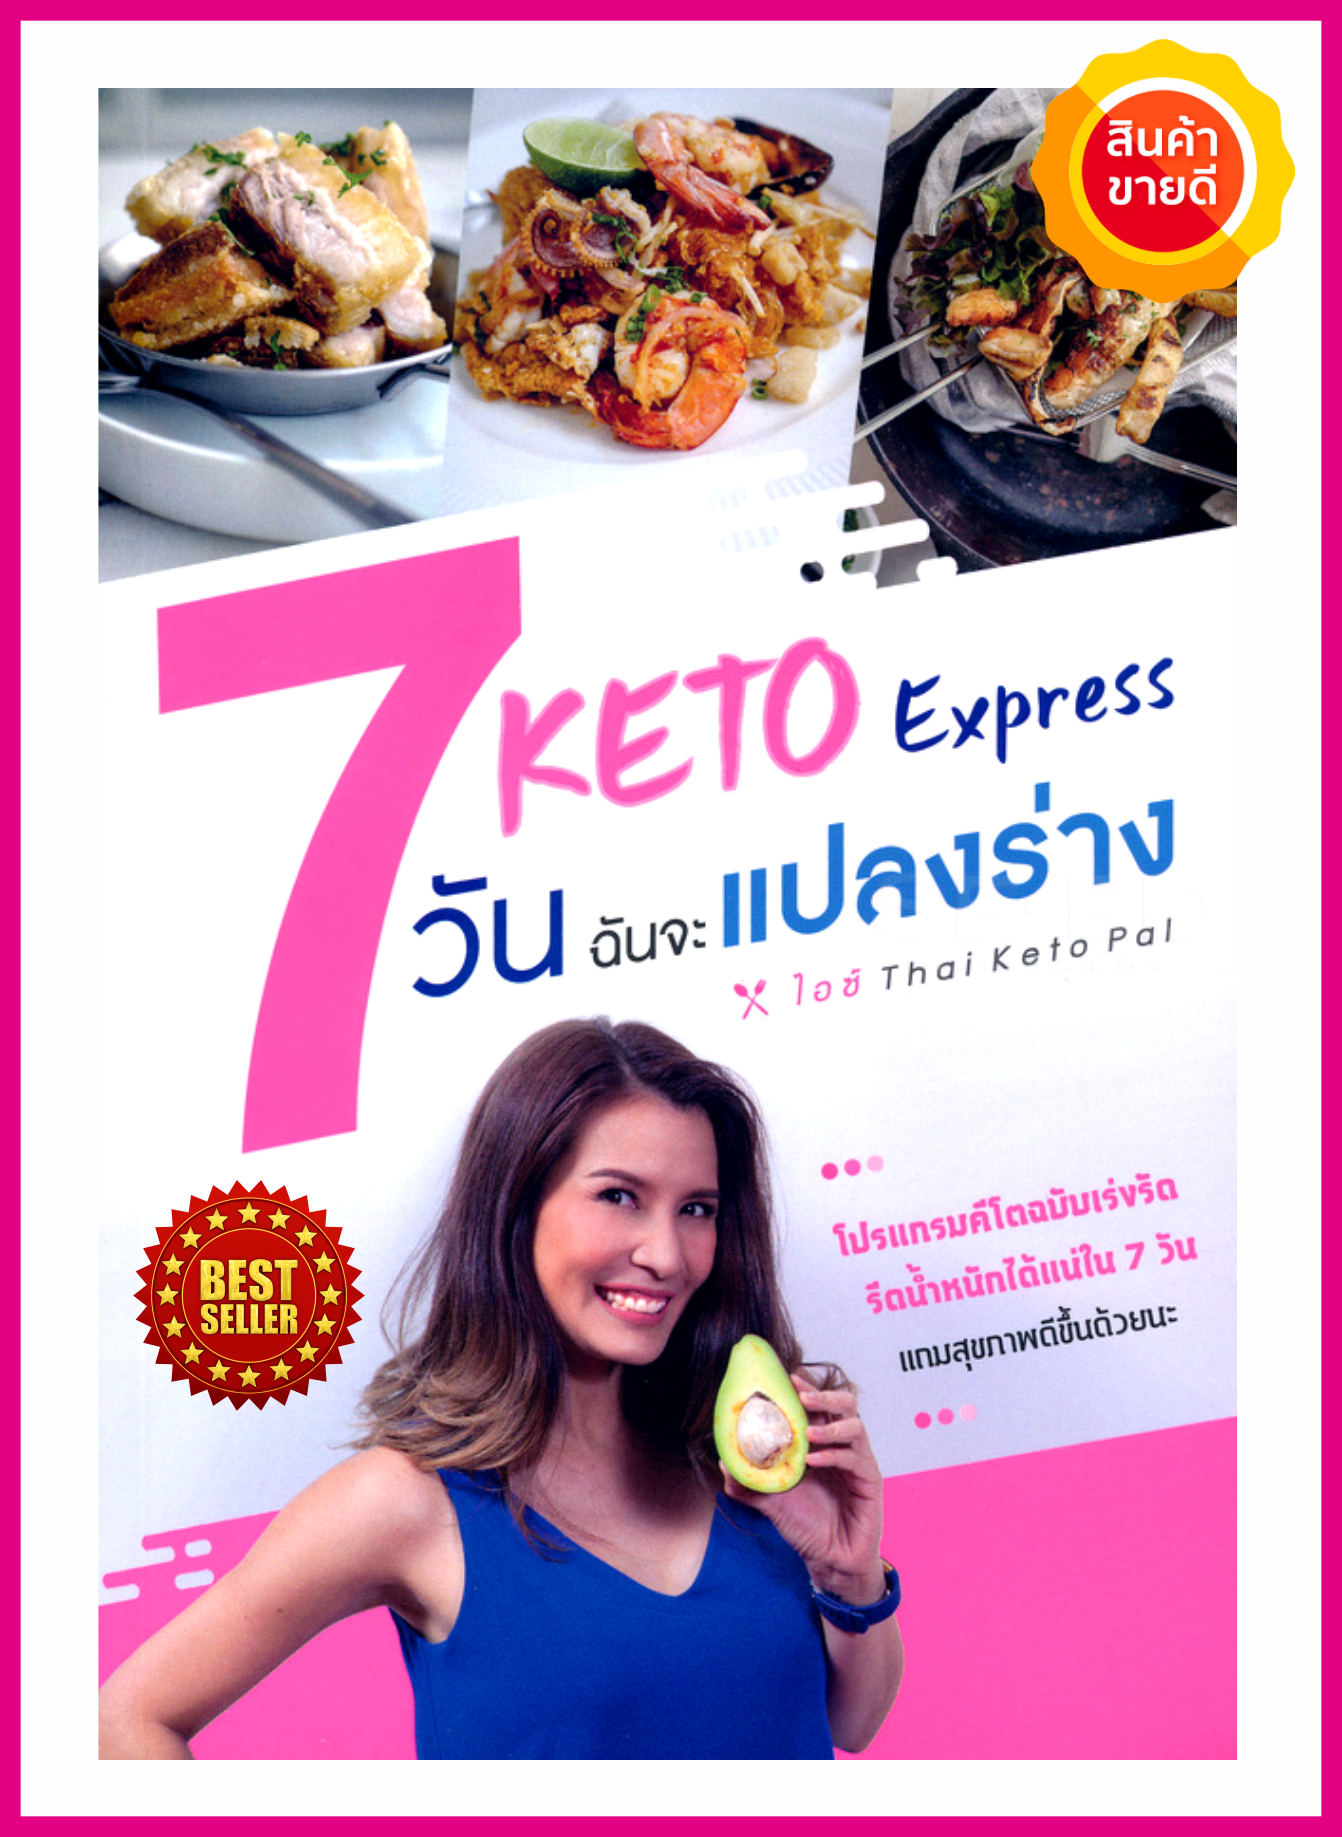 หนังสือ Keto Express 7 วัน ฉันจะแปลงร่าง คู่มือแนะนำอาหารคีโตและโปรแกรมคีโตฉบับเร่งรัด ที่จะพาคุณตั้งเป้าหมายในการคุมน้ำหนักแบบสุขภาพดี